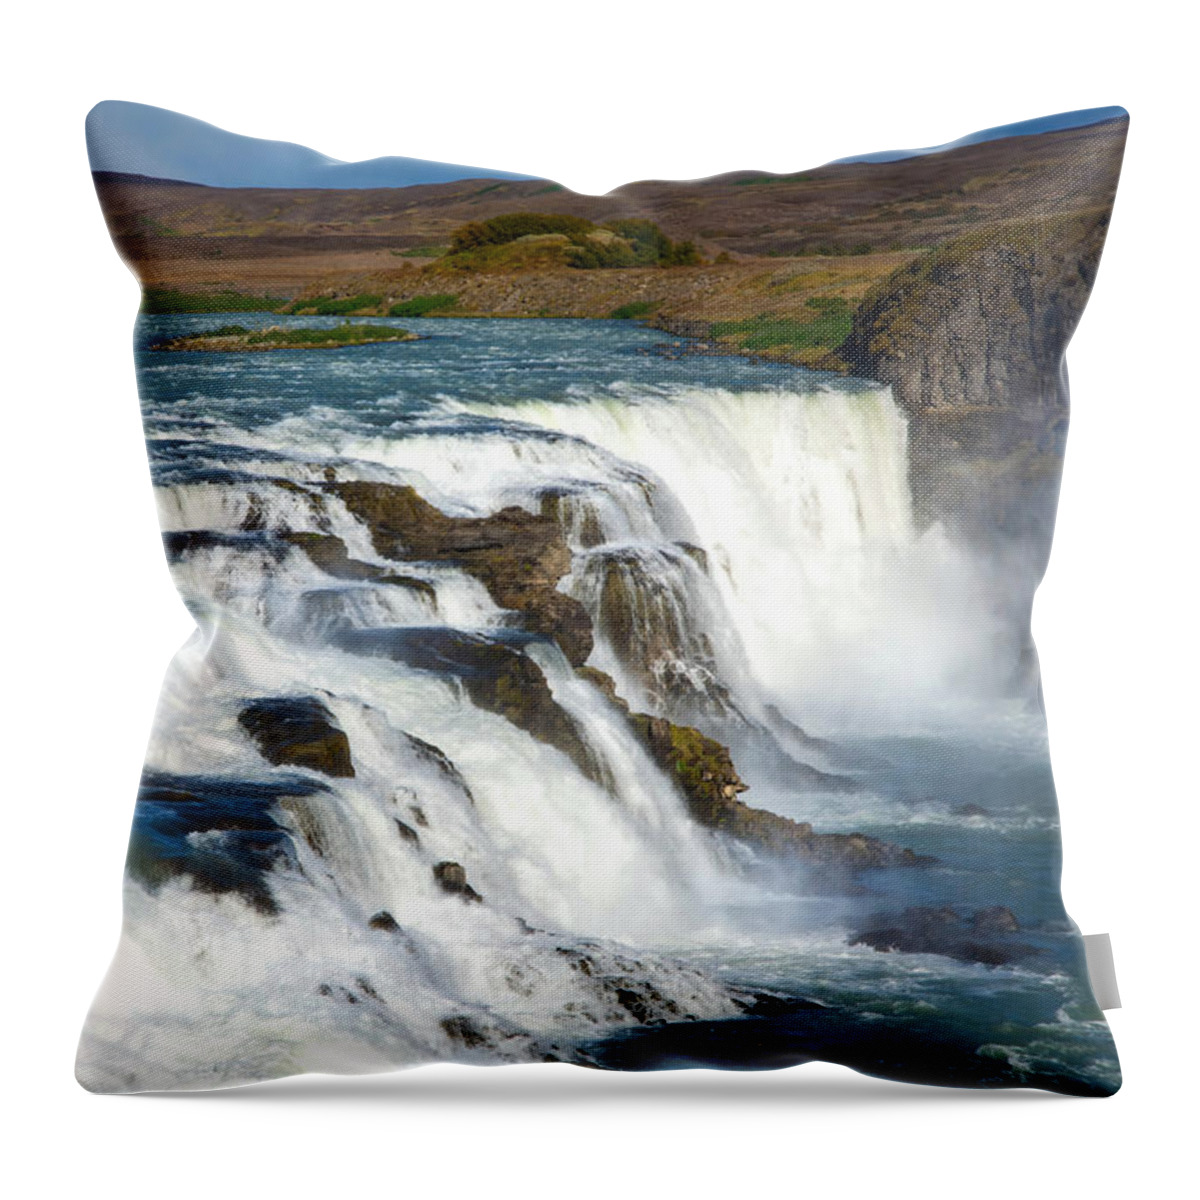 Iceland Waterfall Throw Pillow featuring the photograph Gullfoss Waterfall by Rebecca Herranen